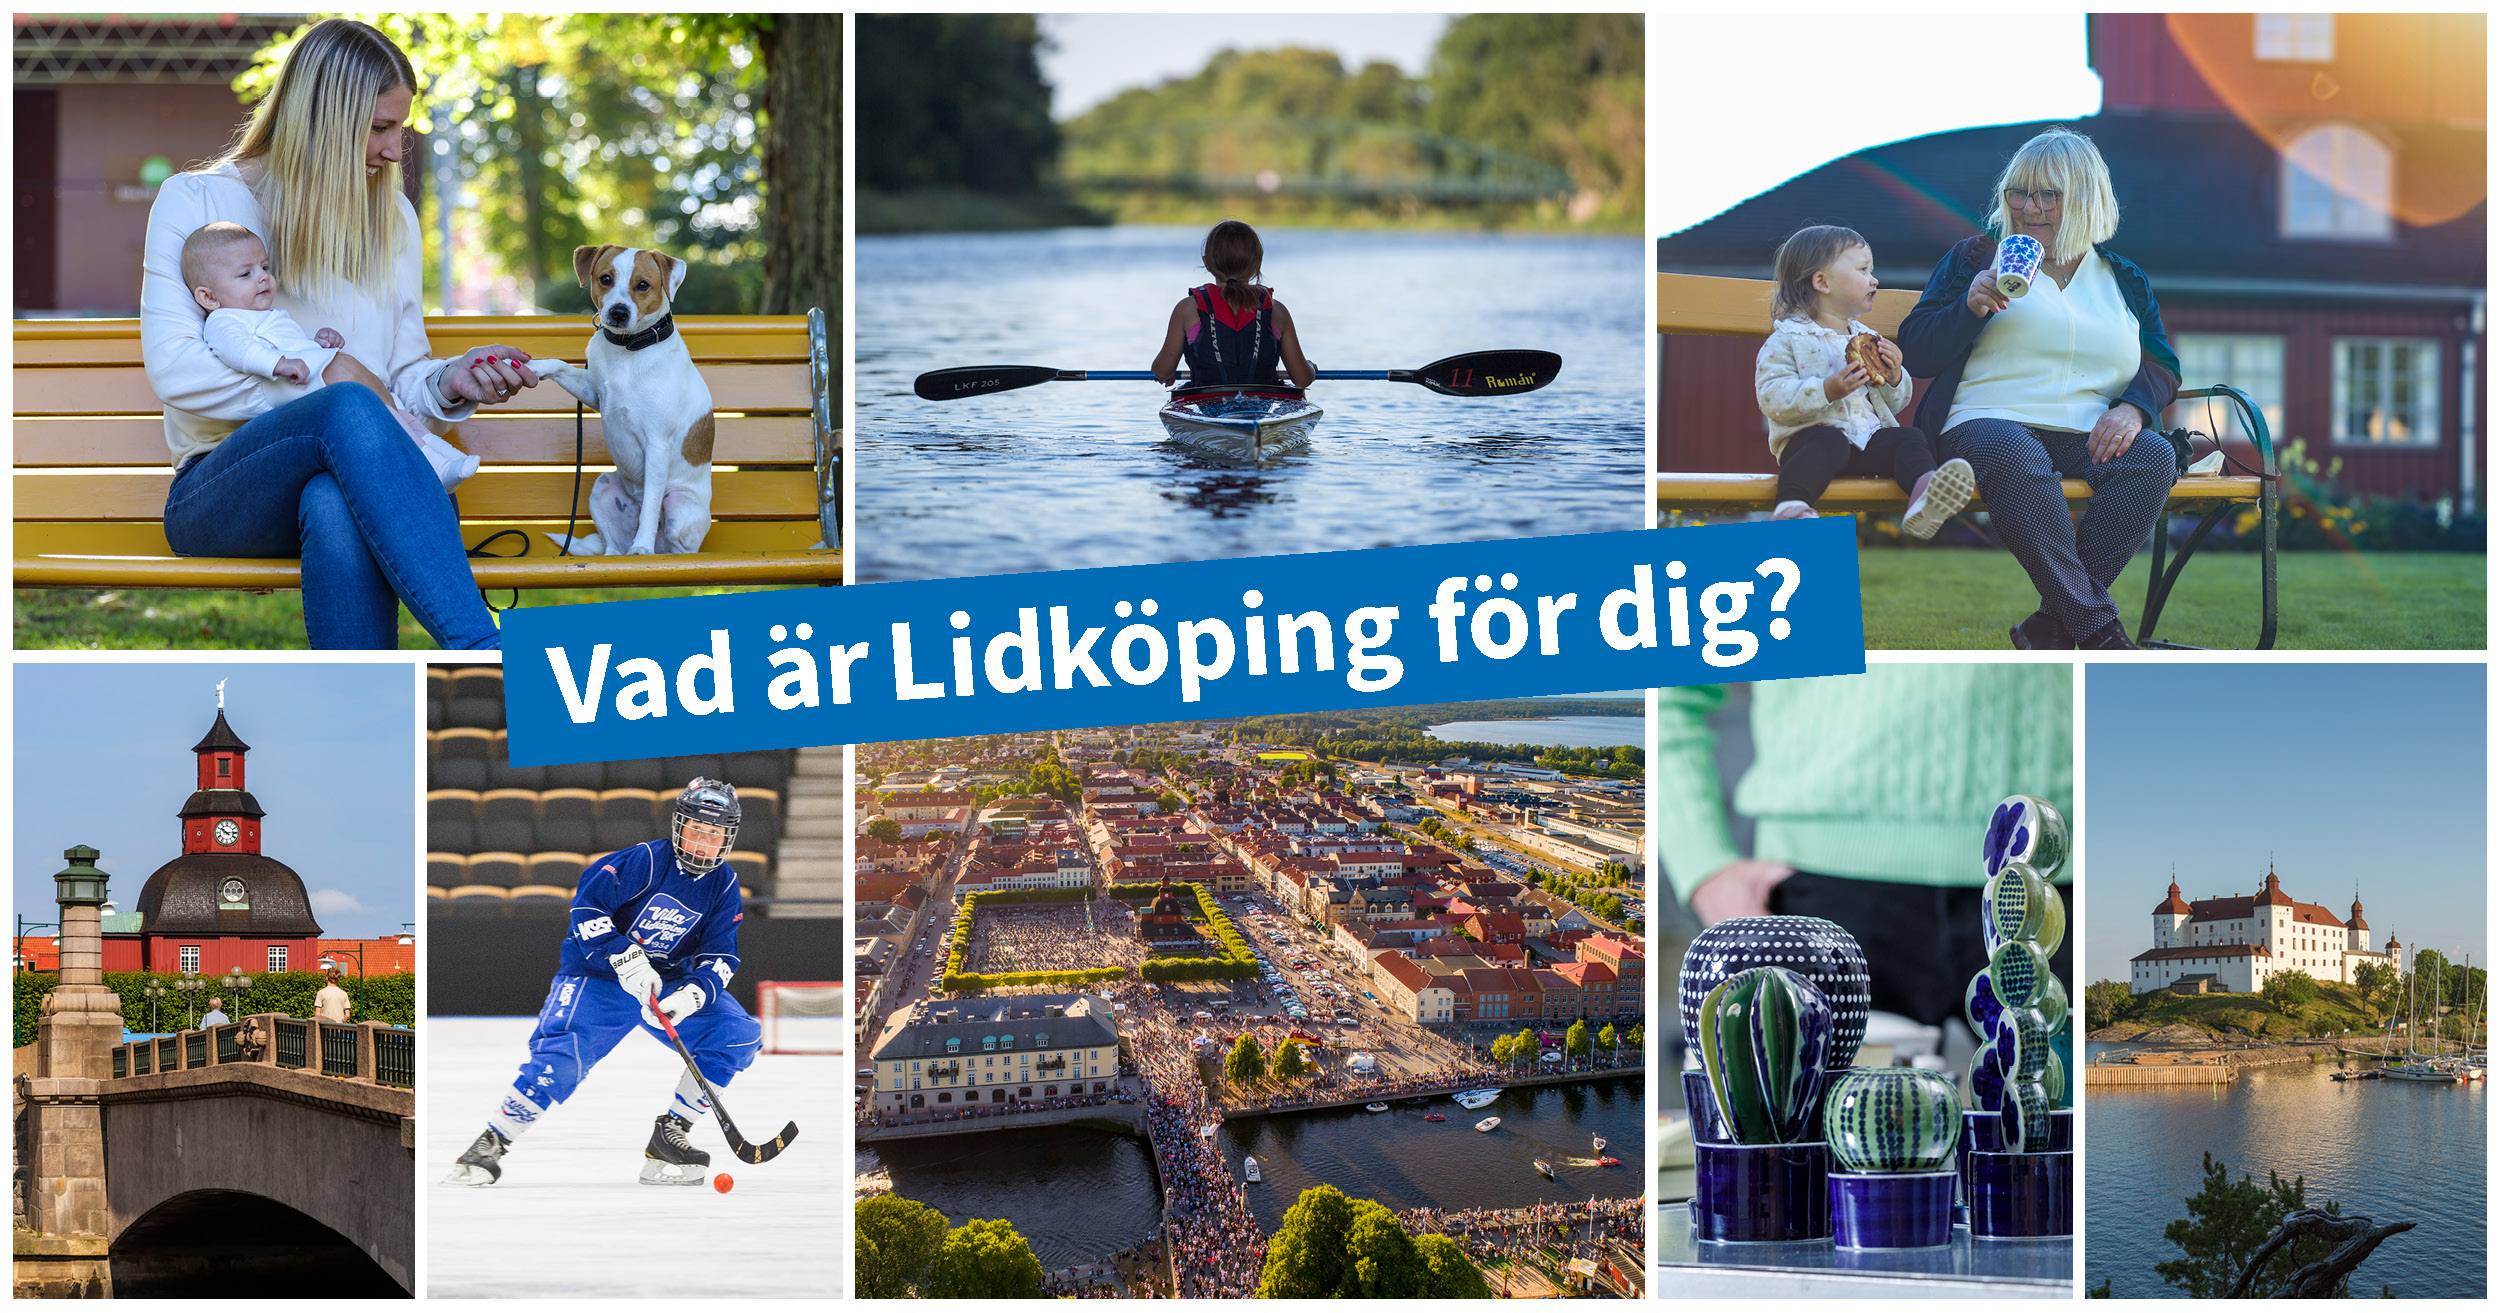 Kollage av Lidköpingsbilder. Vad är Lidköping för dig?